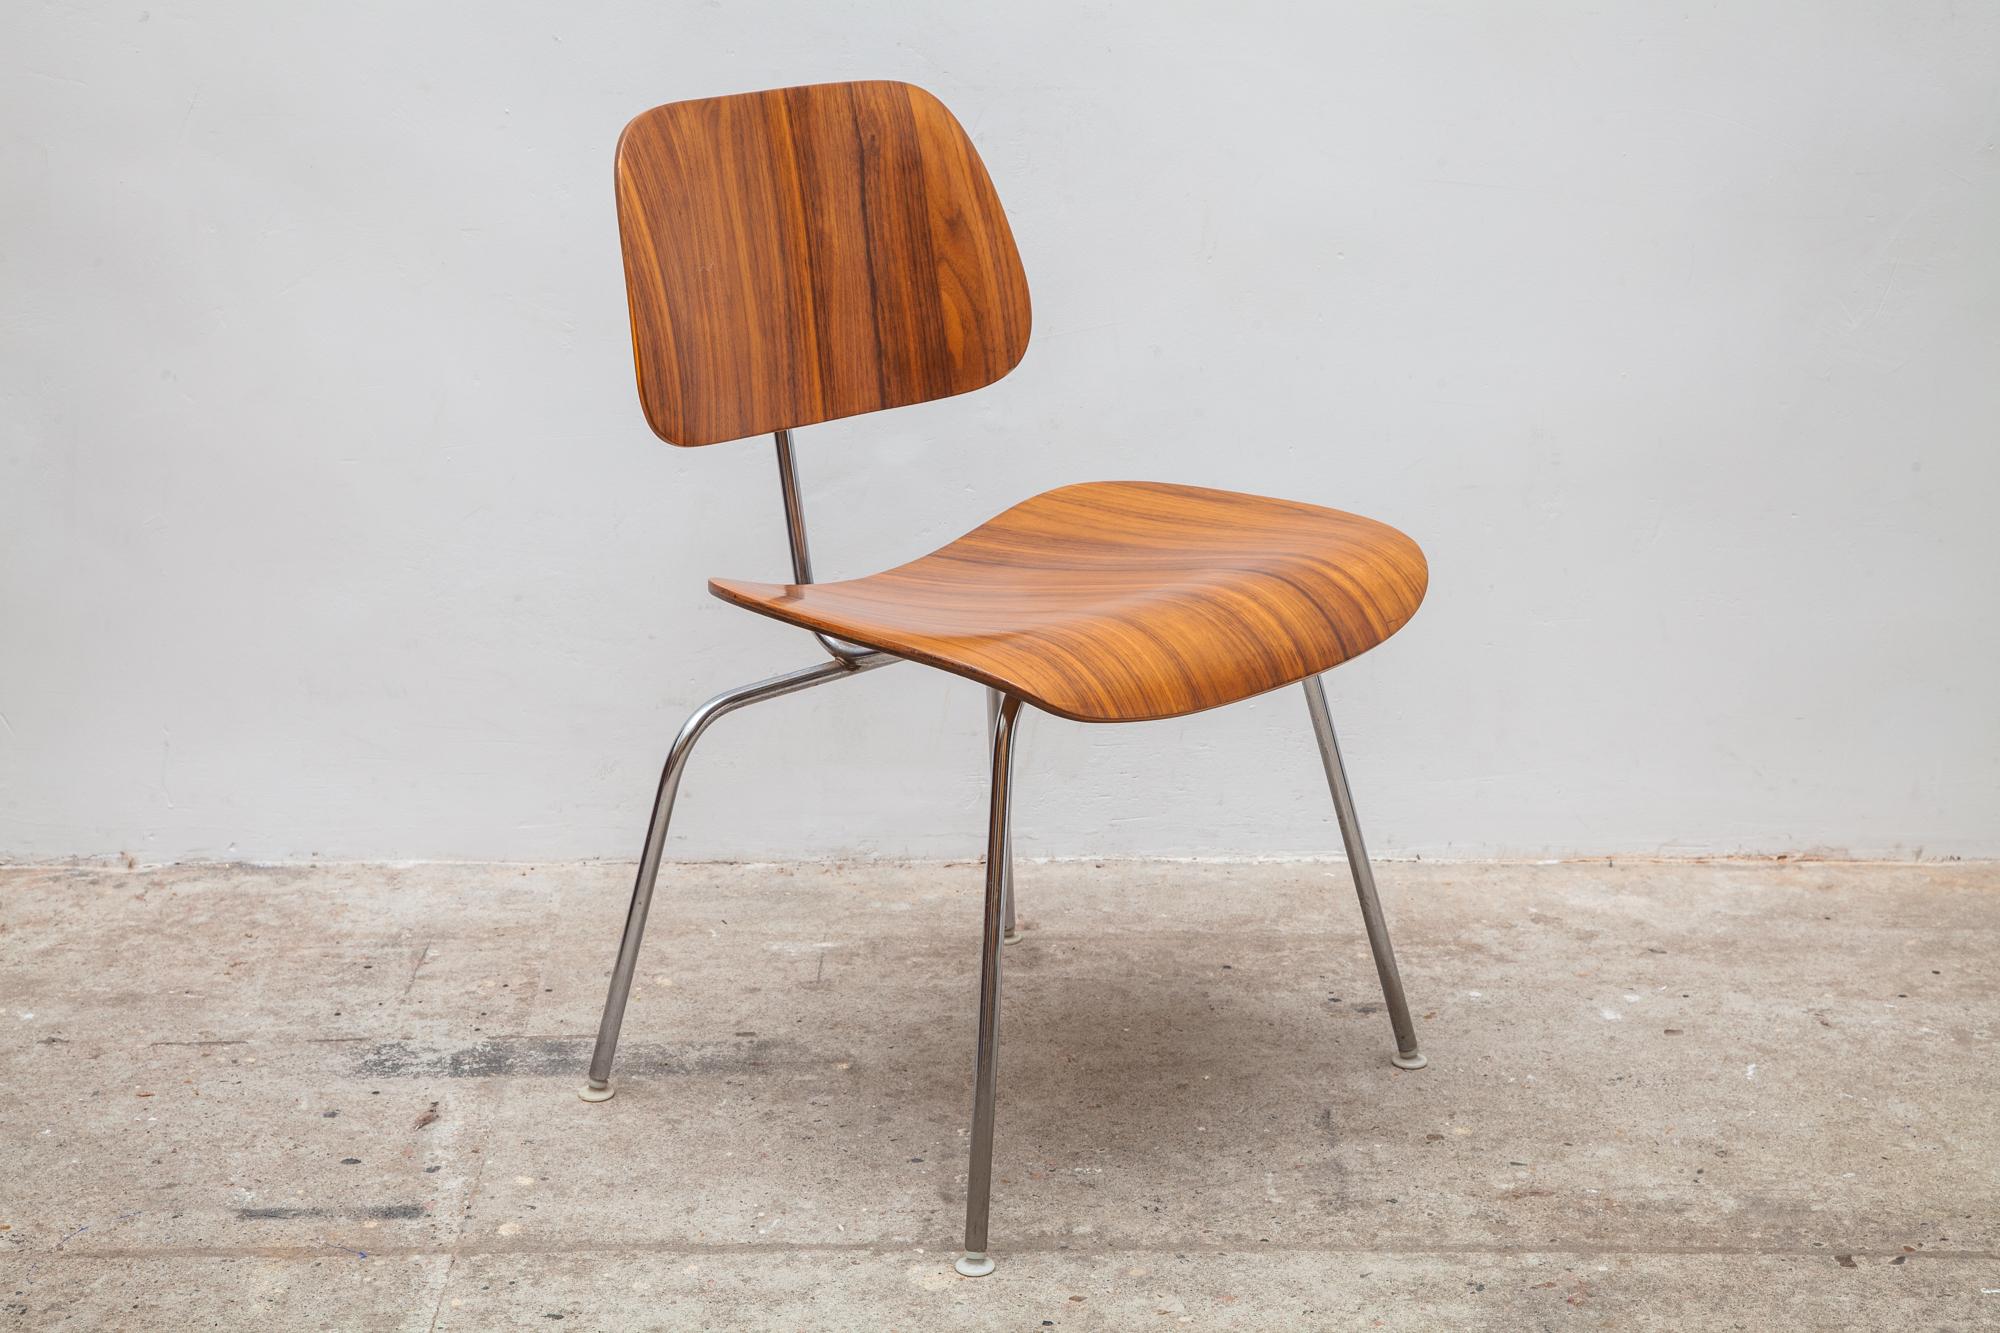 Der ikonische LCM Lounge Chair wurde von Charles und Ray Eames für Herman Miller entworfen. Schön gebogener Sitz und Rückenlehne. Verchromter Sockel mit Stoßdämpfern in ausgezeichnetem Zustand. Originaletikett aus den 1950er Jahren auf der